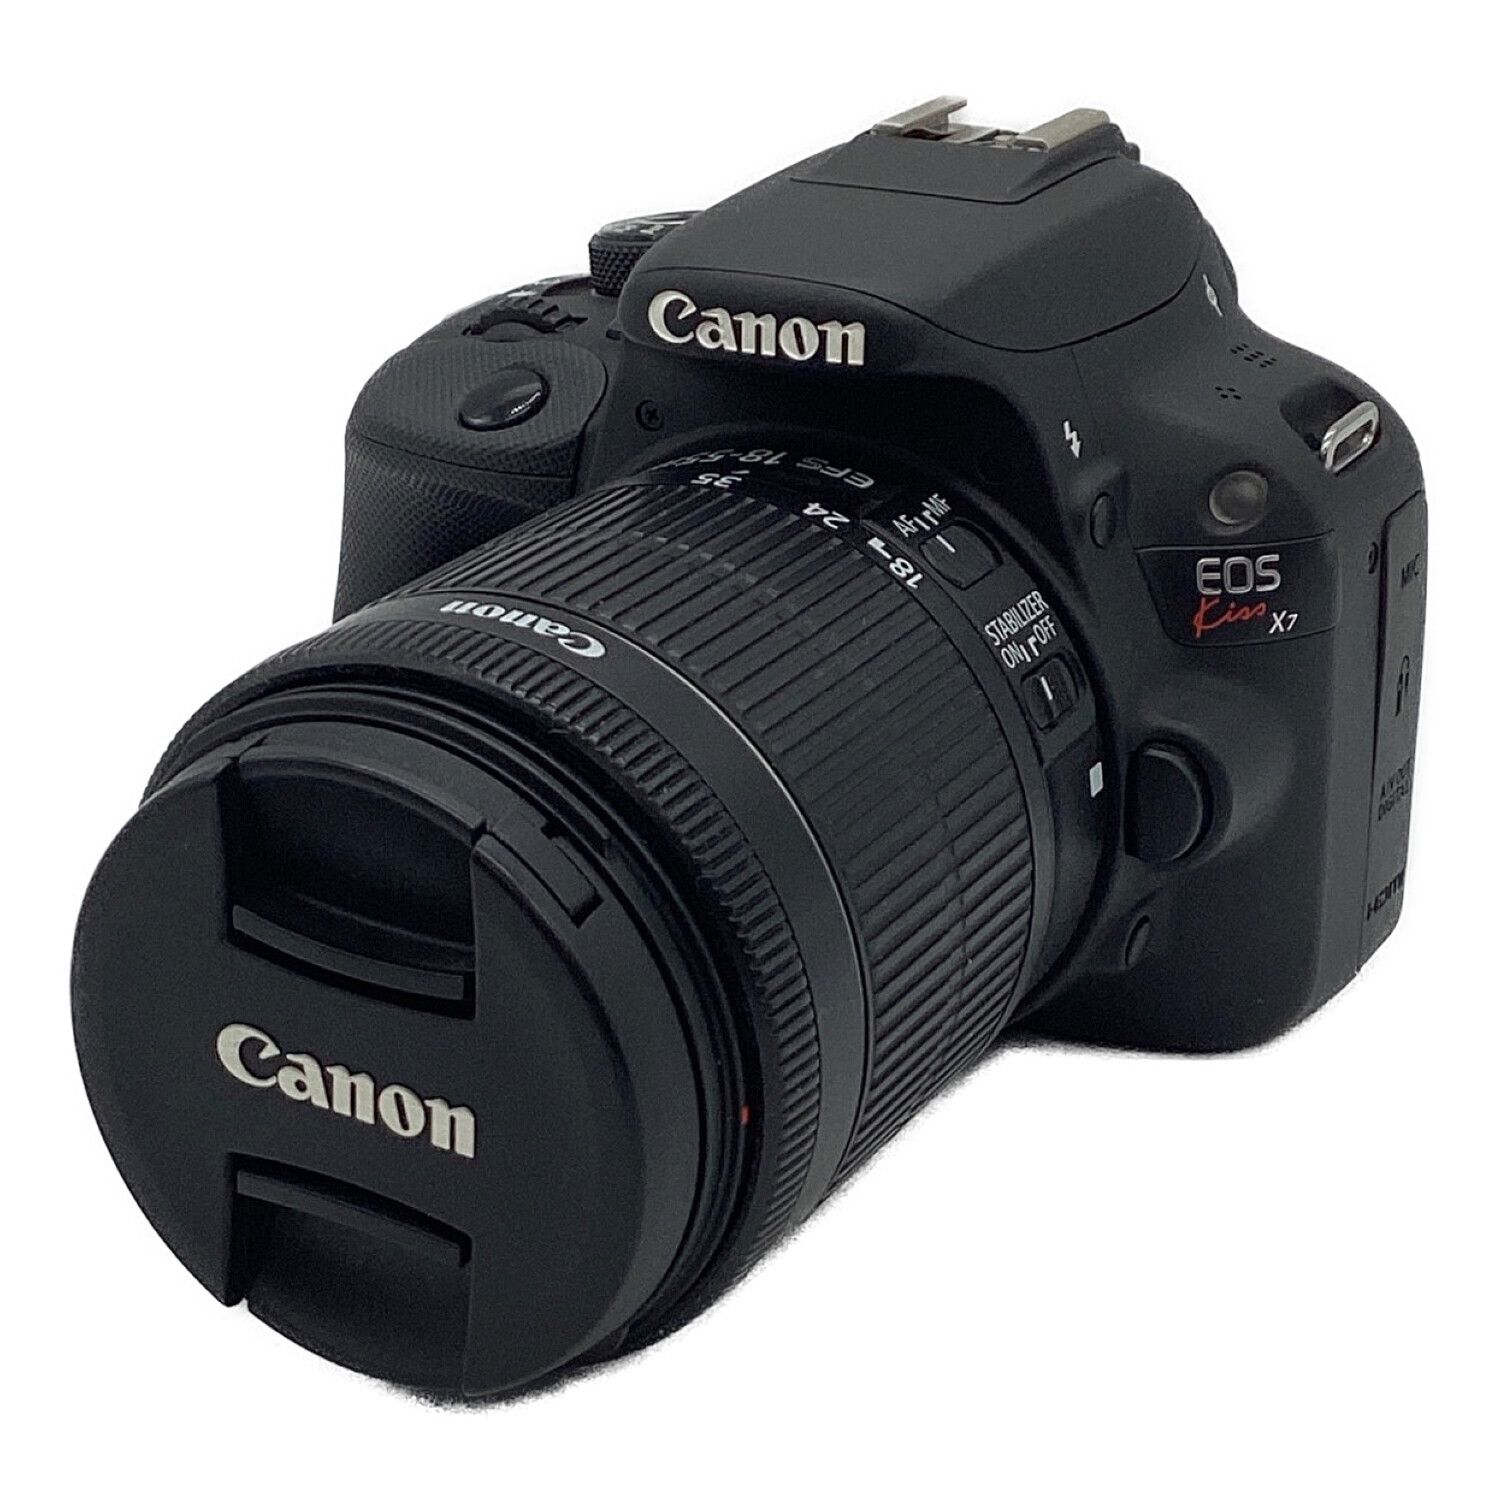 canon ds126441 一眼カメラ ブラック付属品等は写真をご覧ください ...